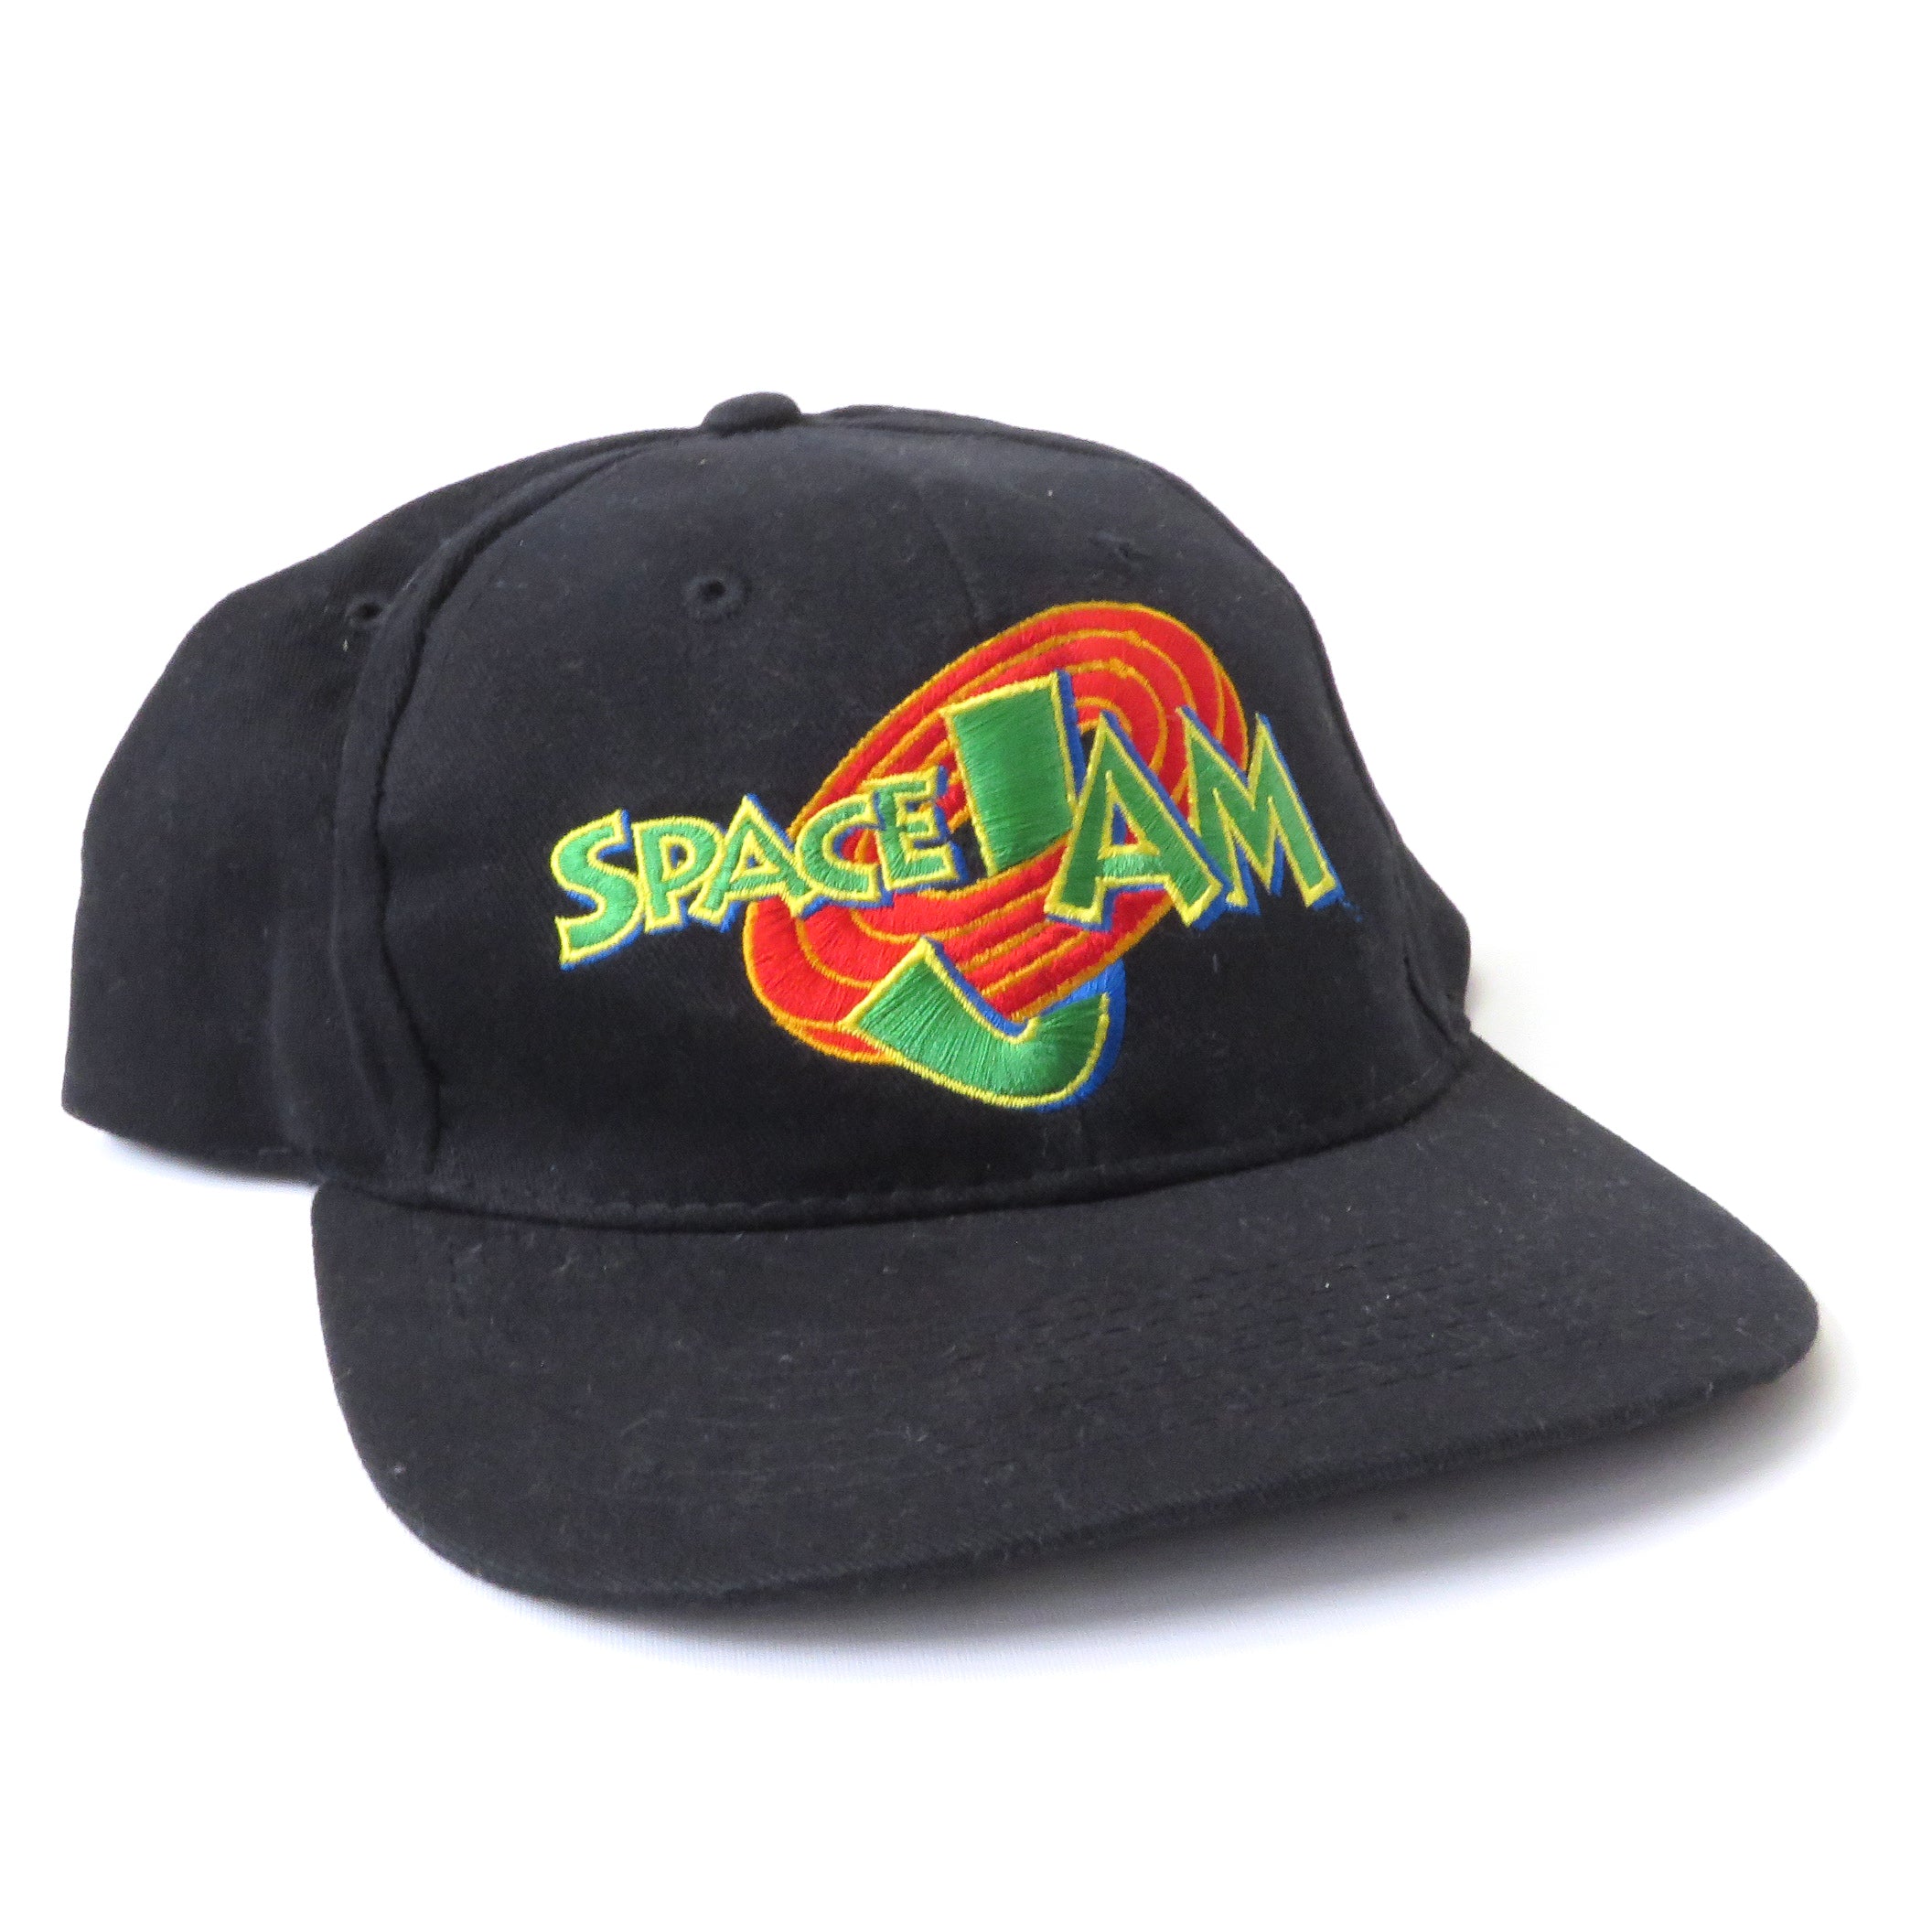 Vintage 1996 Space Jam Snapback Hat